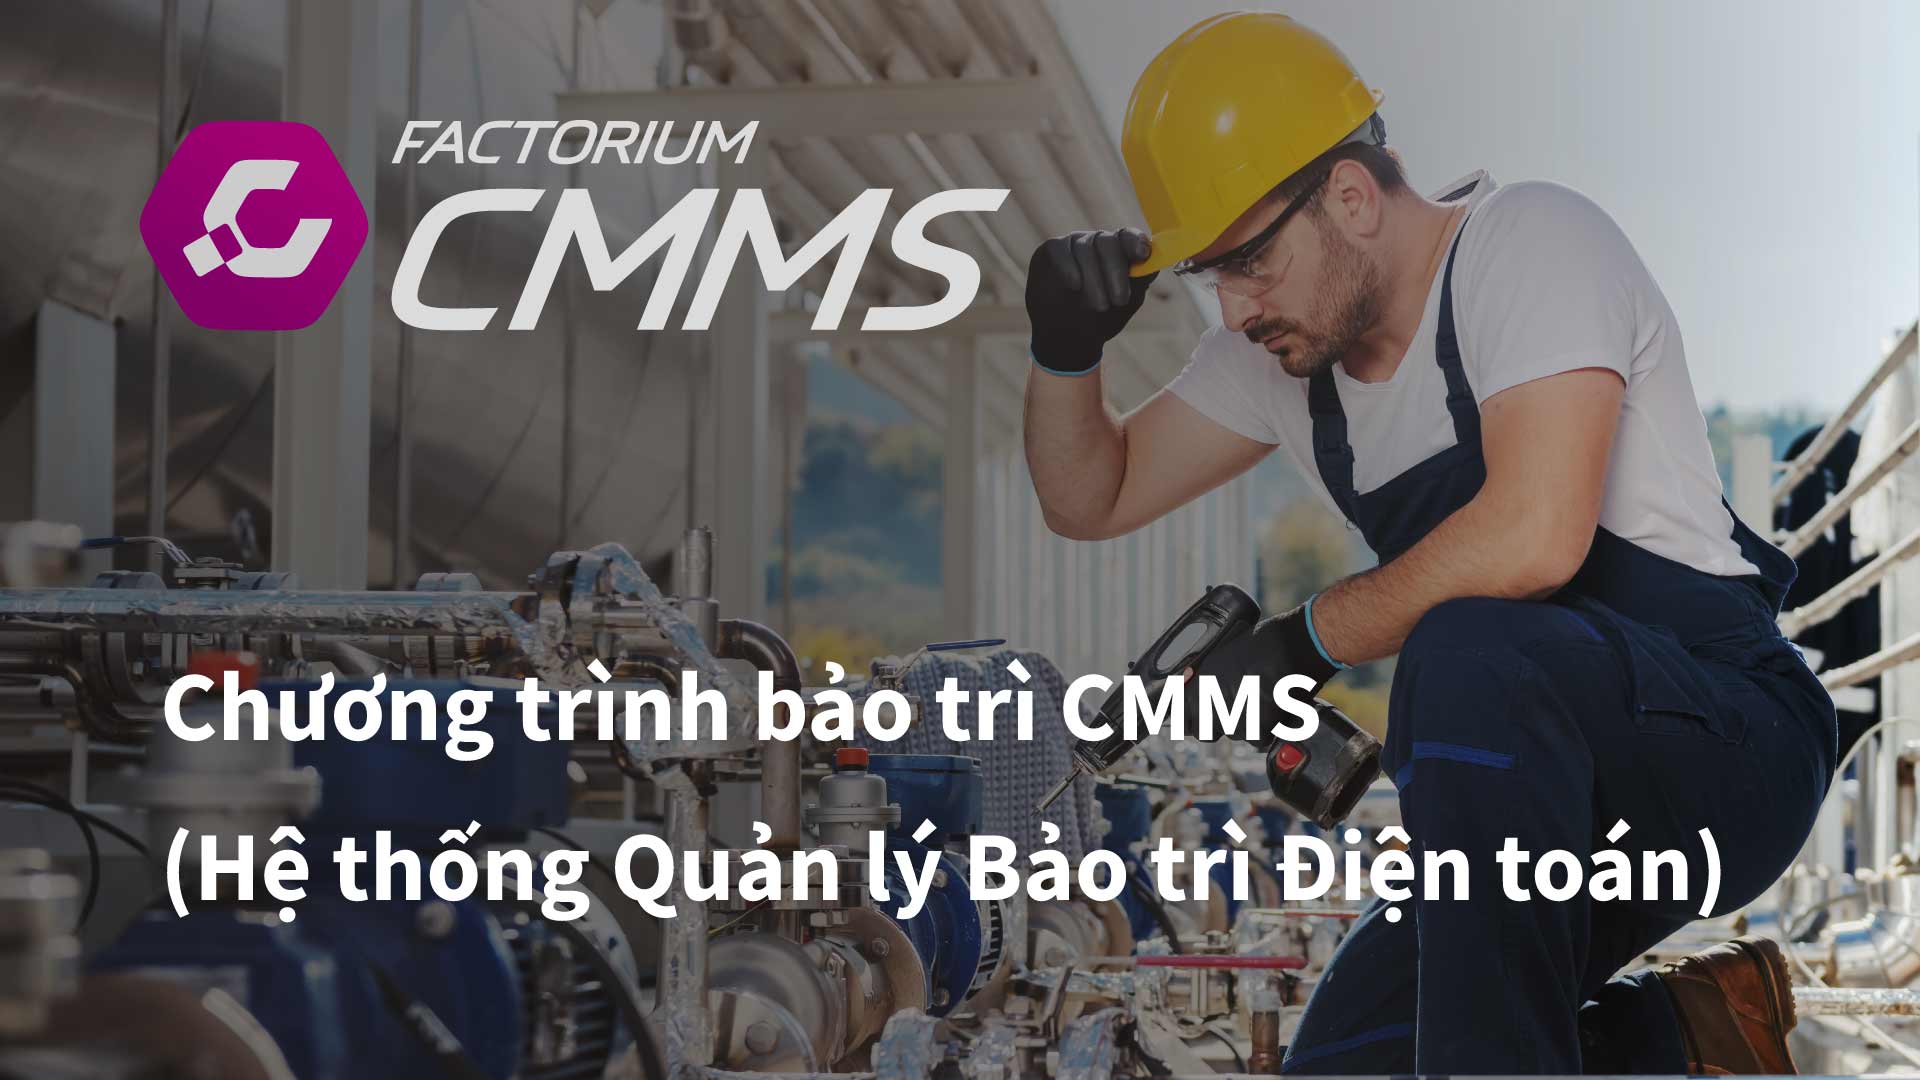 ระบบจัดการงานซ่อมบำรุง CMMS แอพซ่อมบำรุง โปรแกรมซ่อมบำรุง ซ่อมโรงงาน ซ่อมเครื่องจักร แผน PM Computerized Maintenance Management System